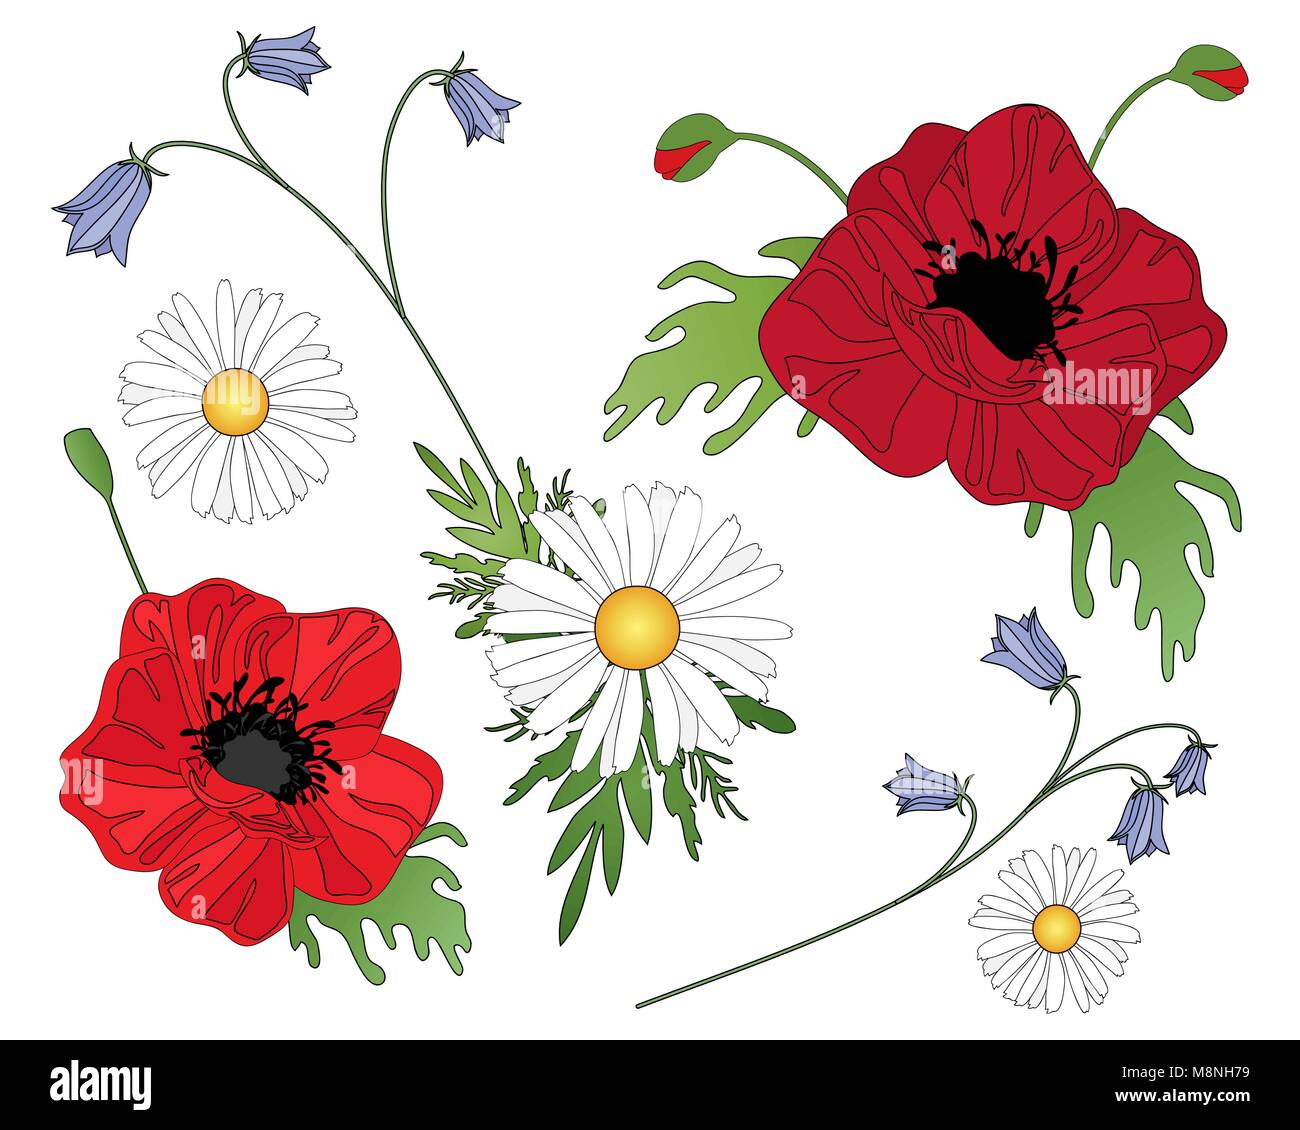 Una illustrazione vettoriale in formato eps formato 10 di fiori selvatici compresi harebells papaveri e margherite disposti su uno sfondo bianco Illustrazione Vettoriale